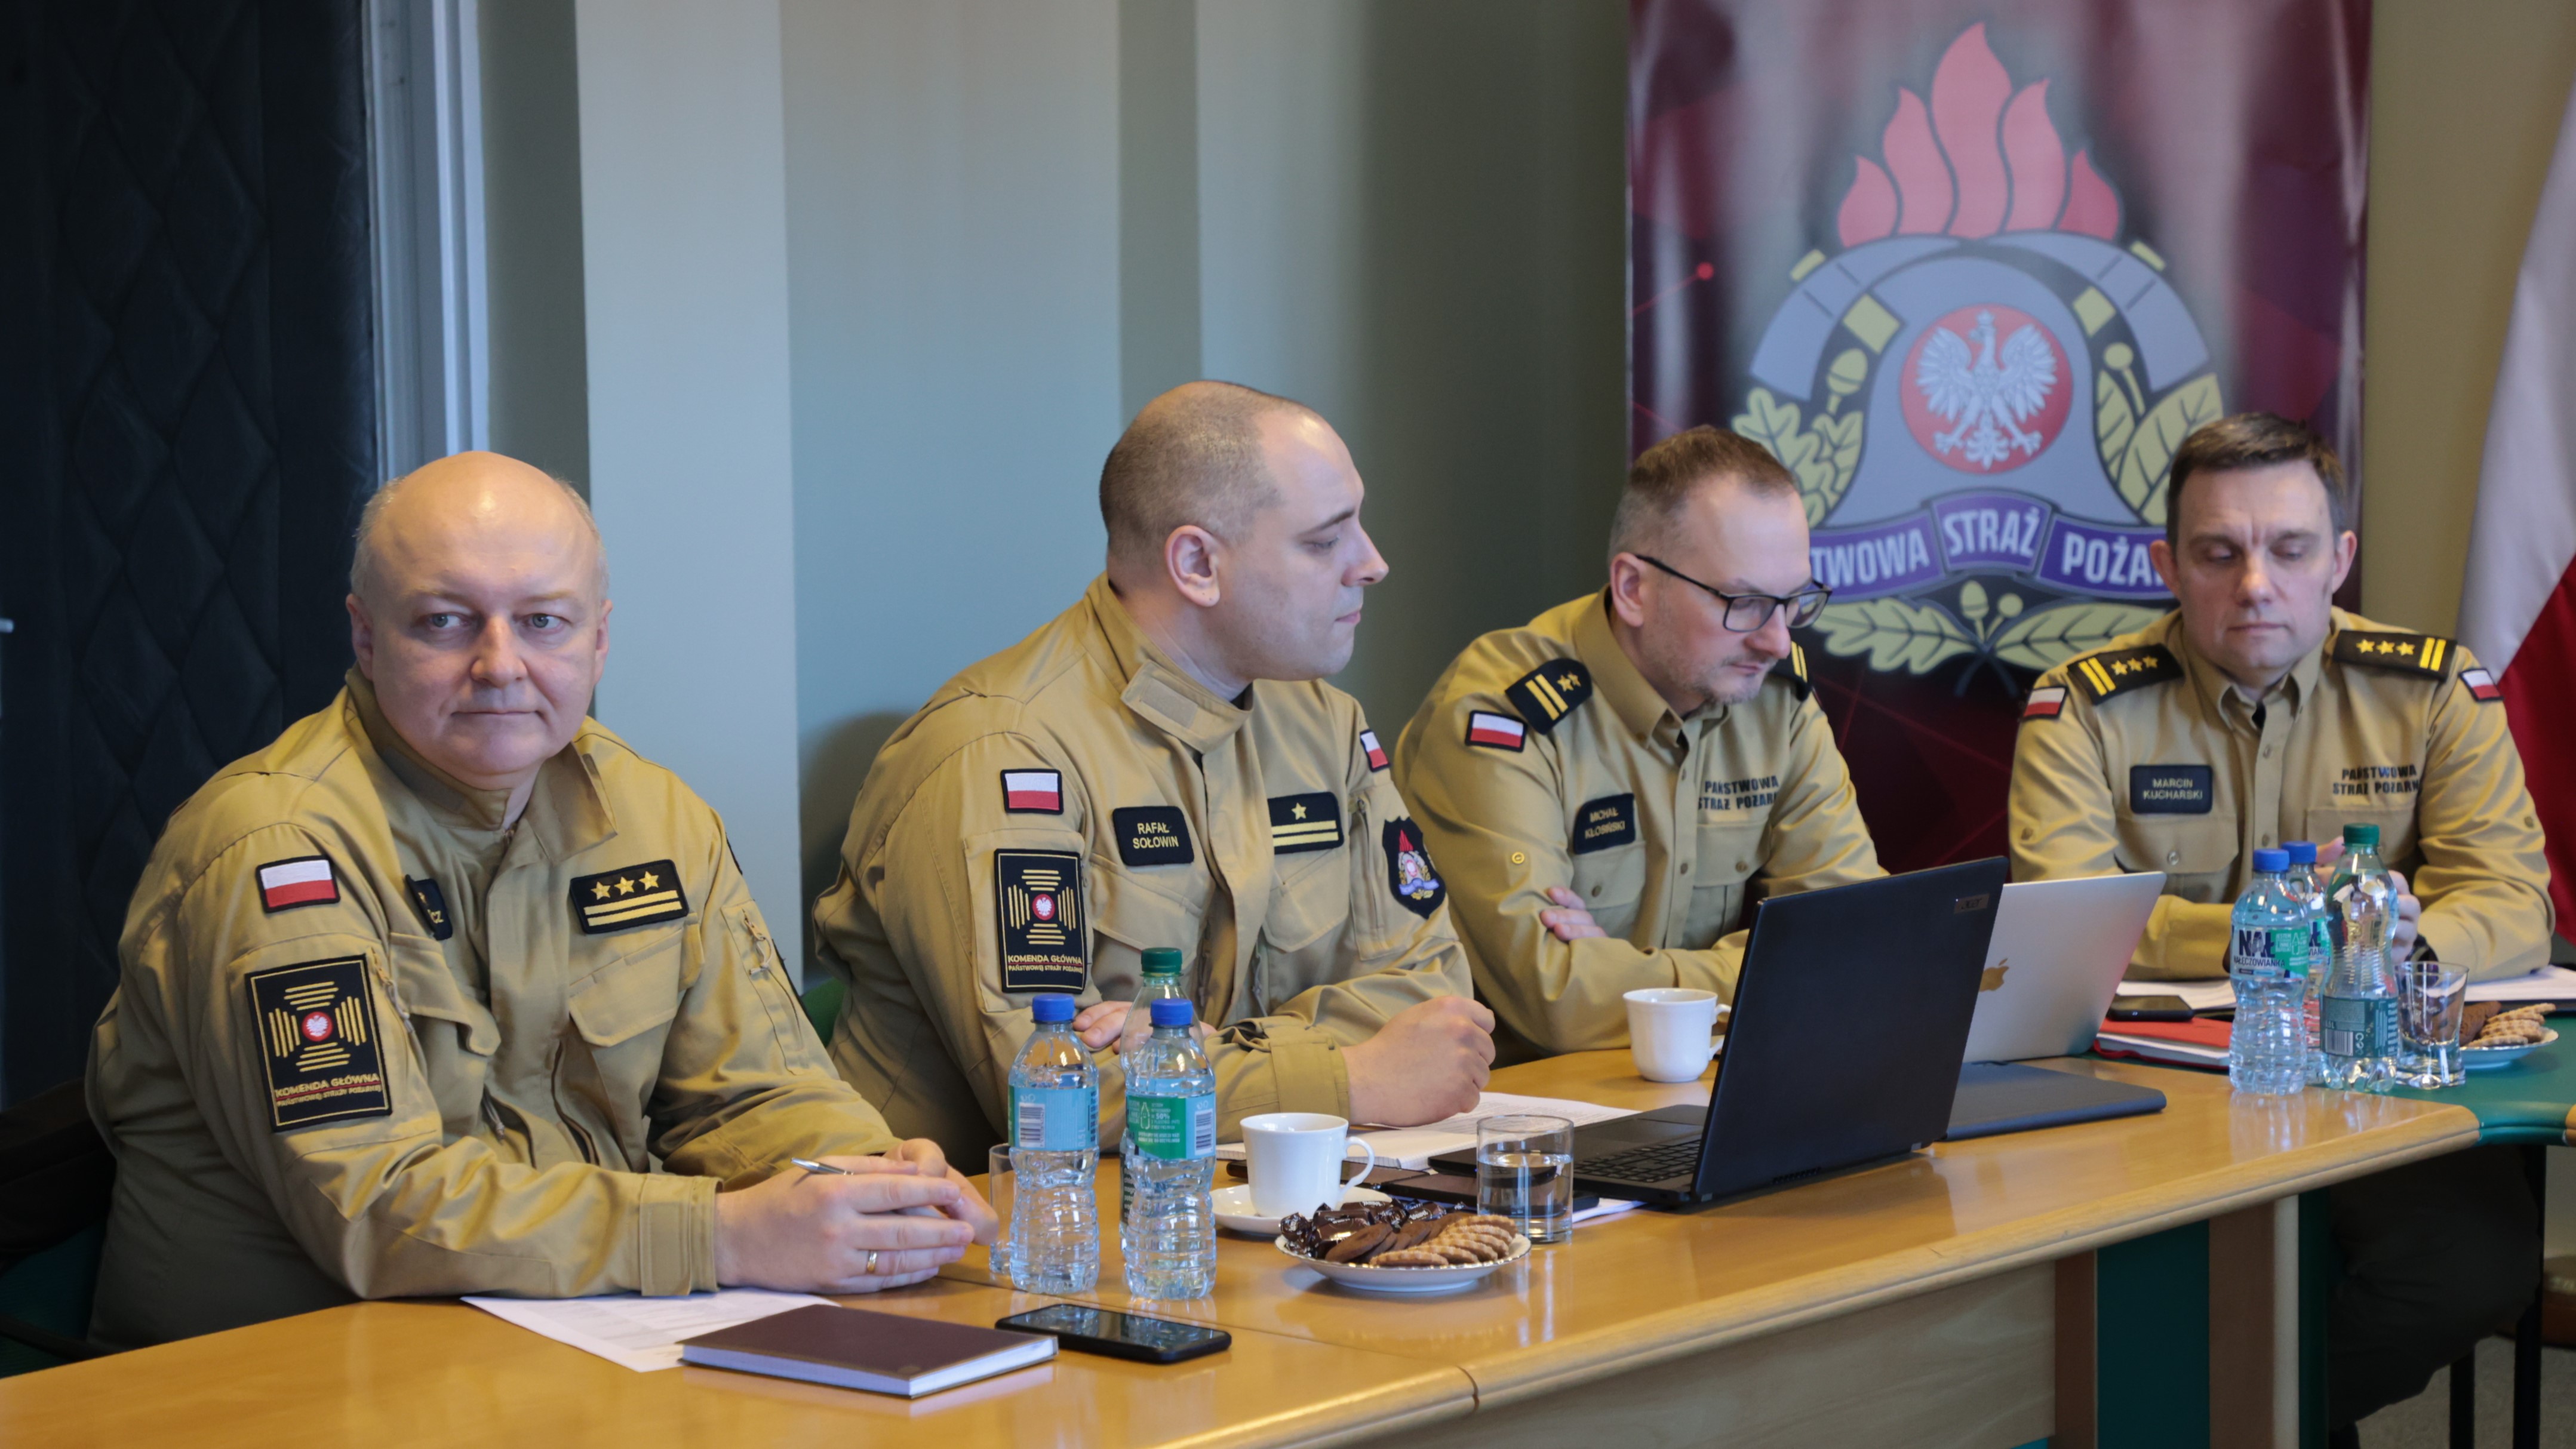 Czterech funkcjonariuszy KG PSP siedzi przy stole podczas spotkania, za nimi stoi baner z logo PSP.